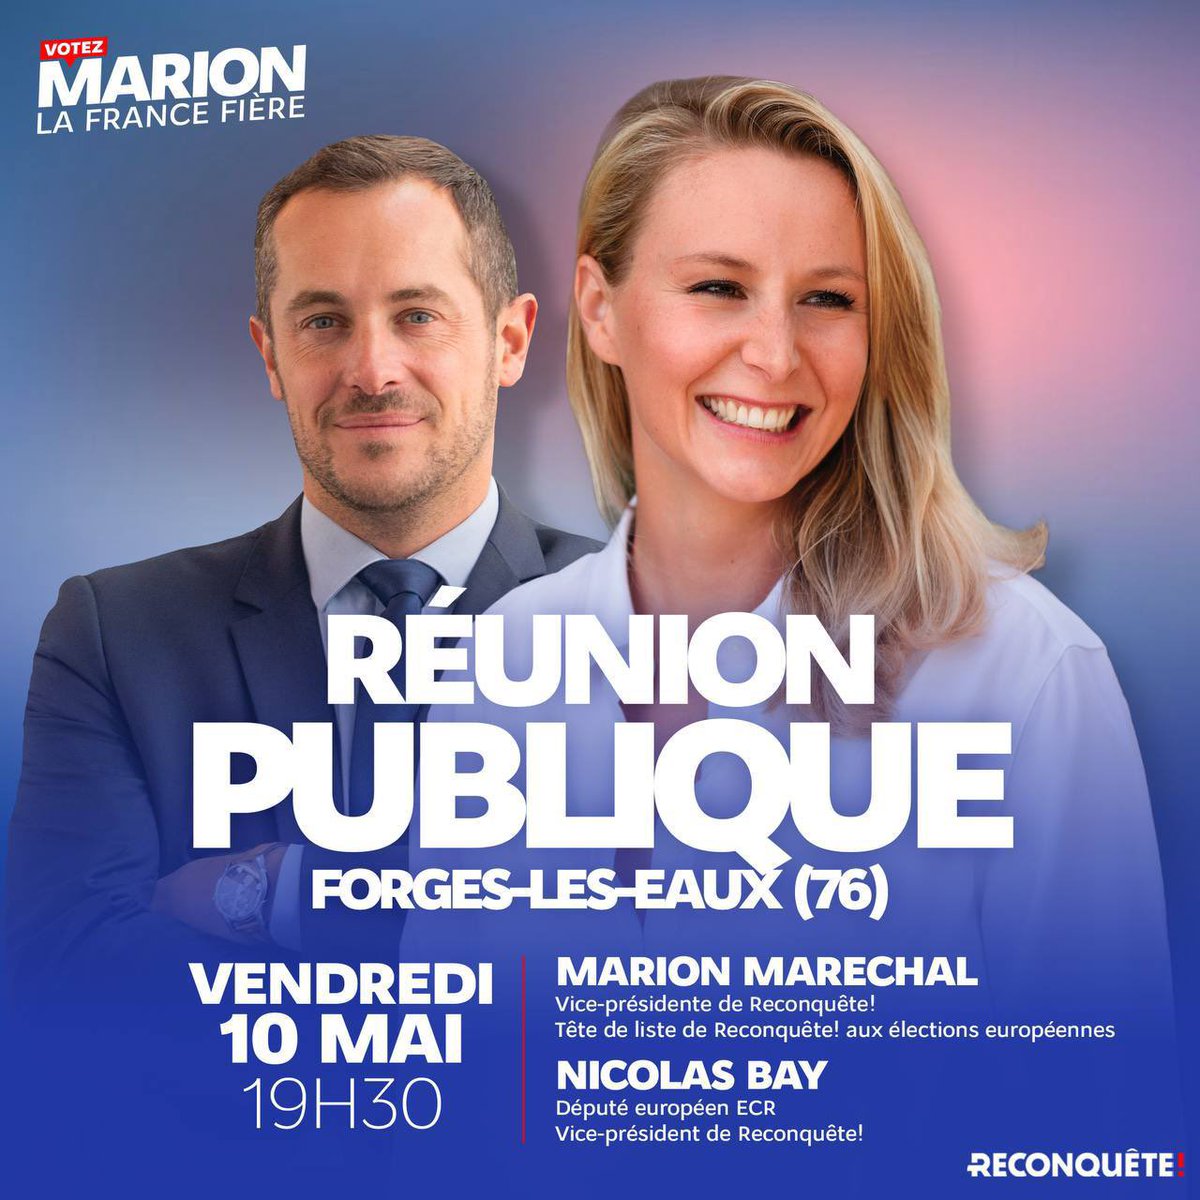 🇫🇷 Je vous donne rendez-vous avec @NicolasBay_ ce vendredi 10 mai en Seine-Maritime pour une réunion publique ! Infos et inscriptions 👉 my.weezevent.com/reunion-publiq… #VotezMarion